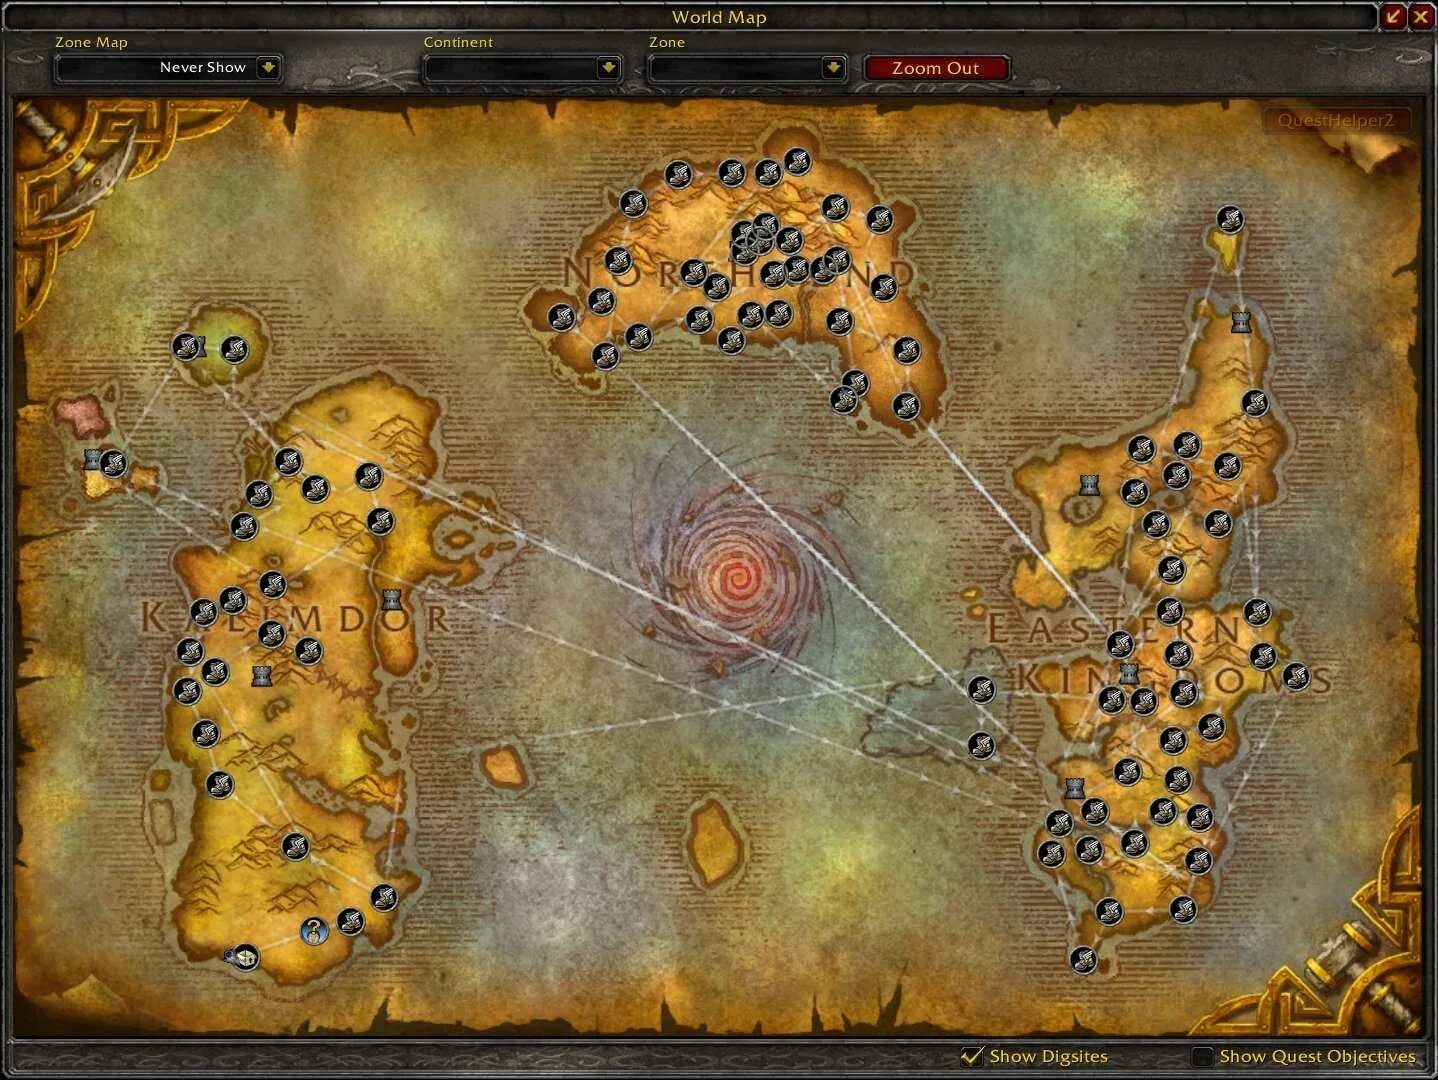 Распределитель полетов wow 3.3.5. Wow 3.3.5 распорядитель полетов карта. World of Warcraft 3.3.5a карты. Карта полетов 335 ВОВ Альянс.